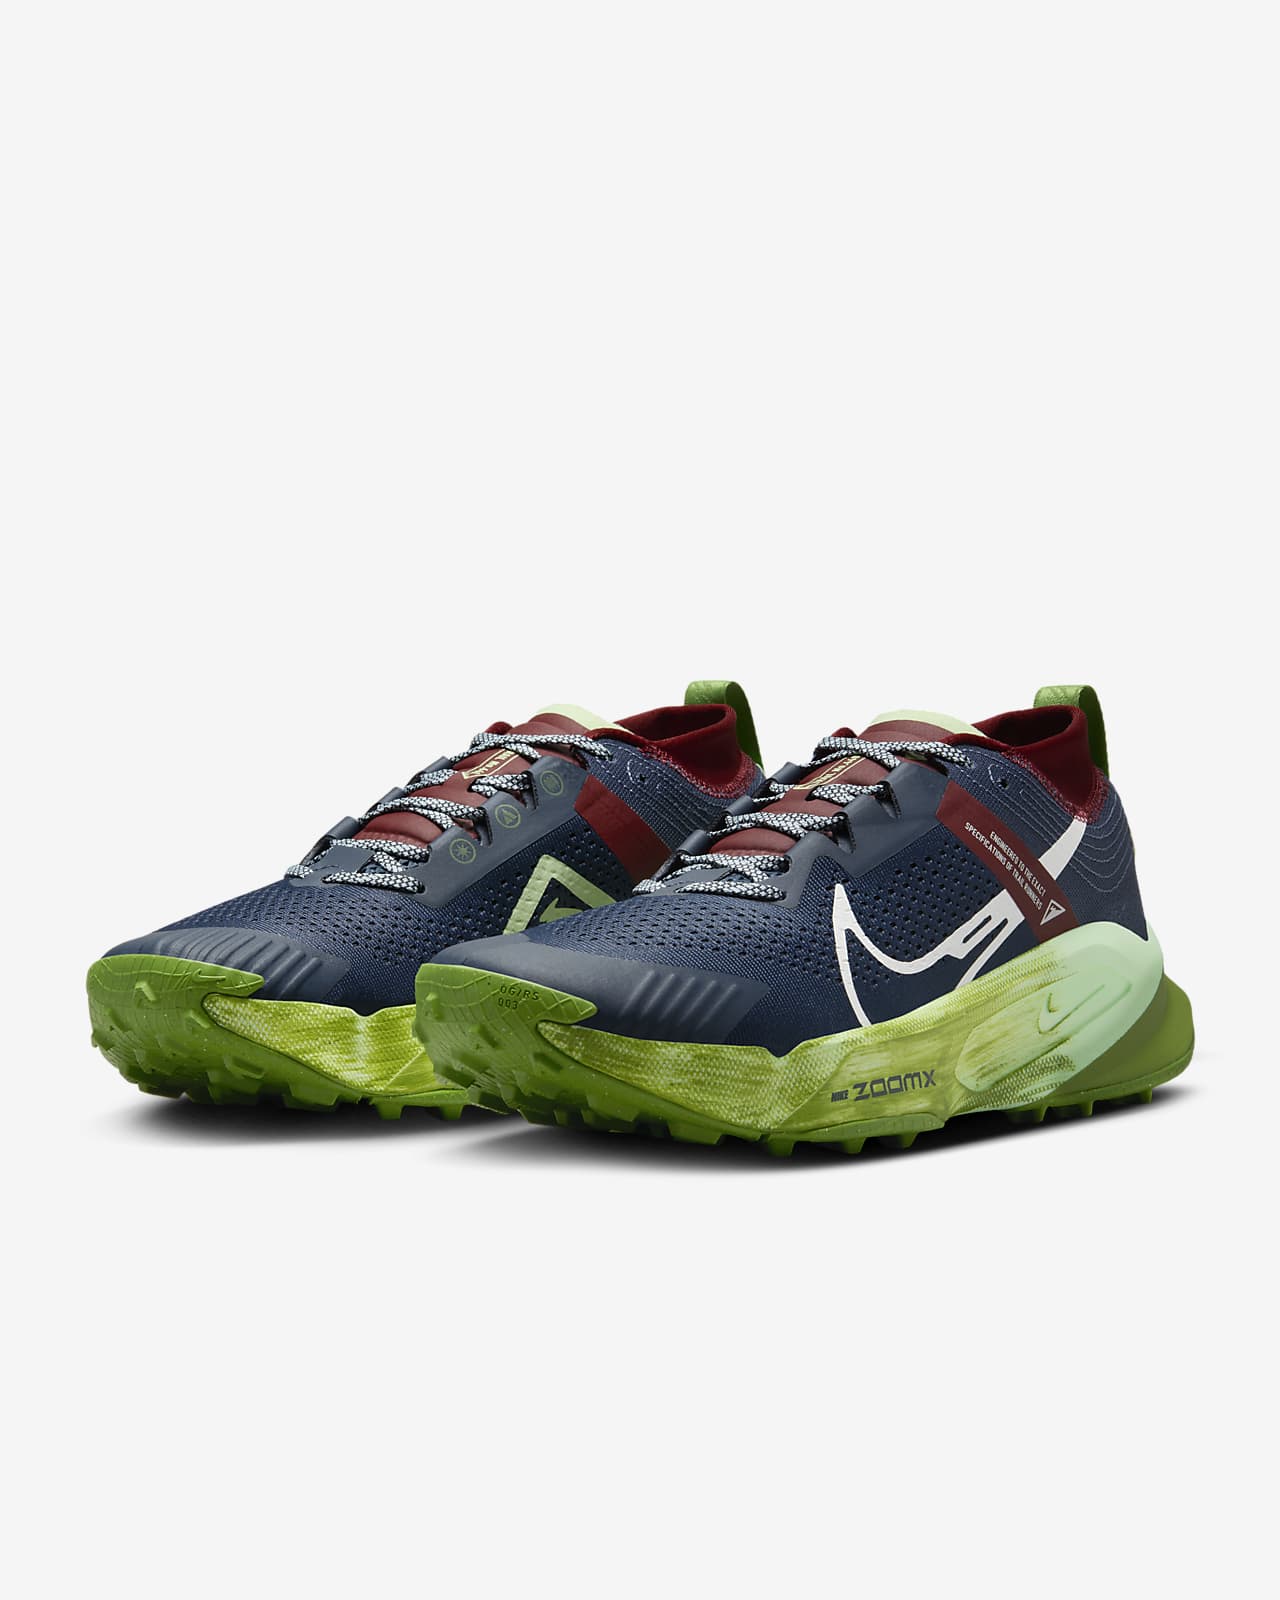 Nike Zegama Men's Trail Running Shoes. Nike JP